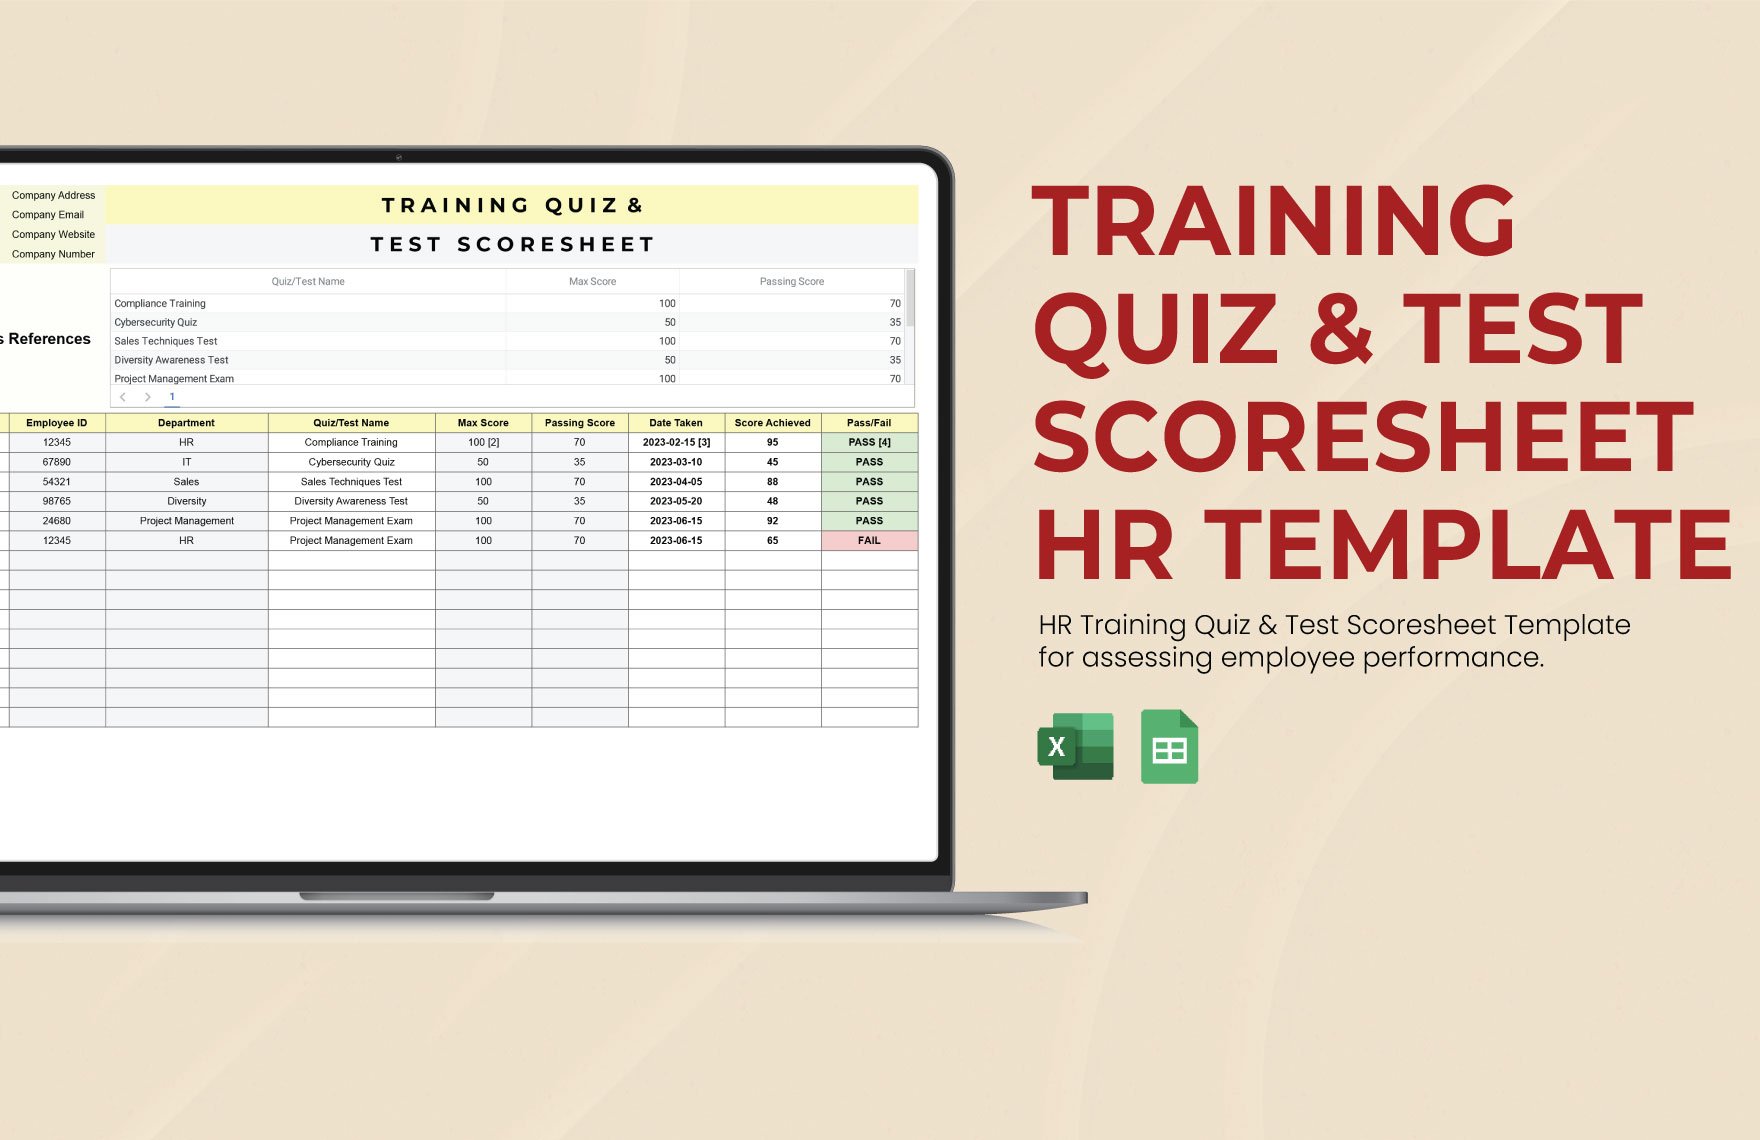 Training Quiz & Test Scoresheet HR Template